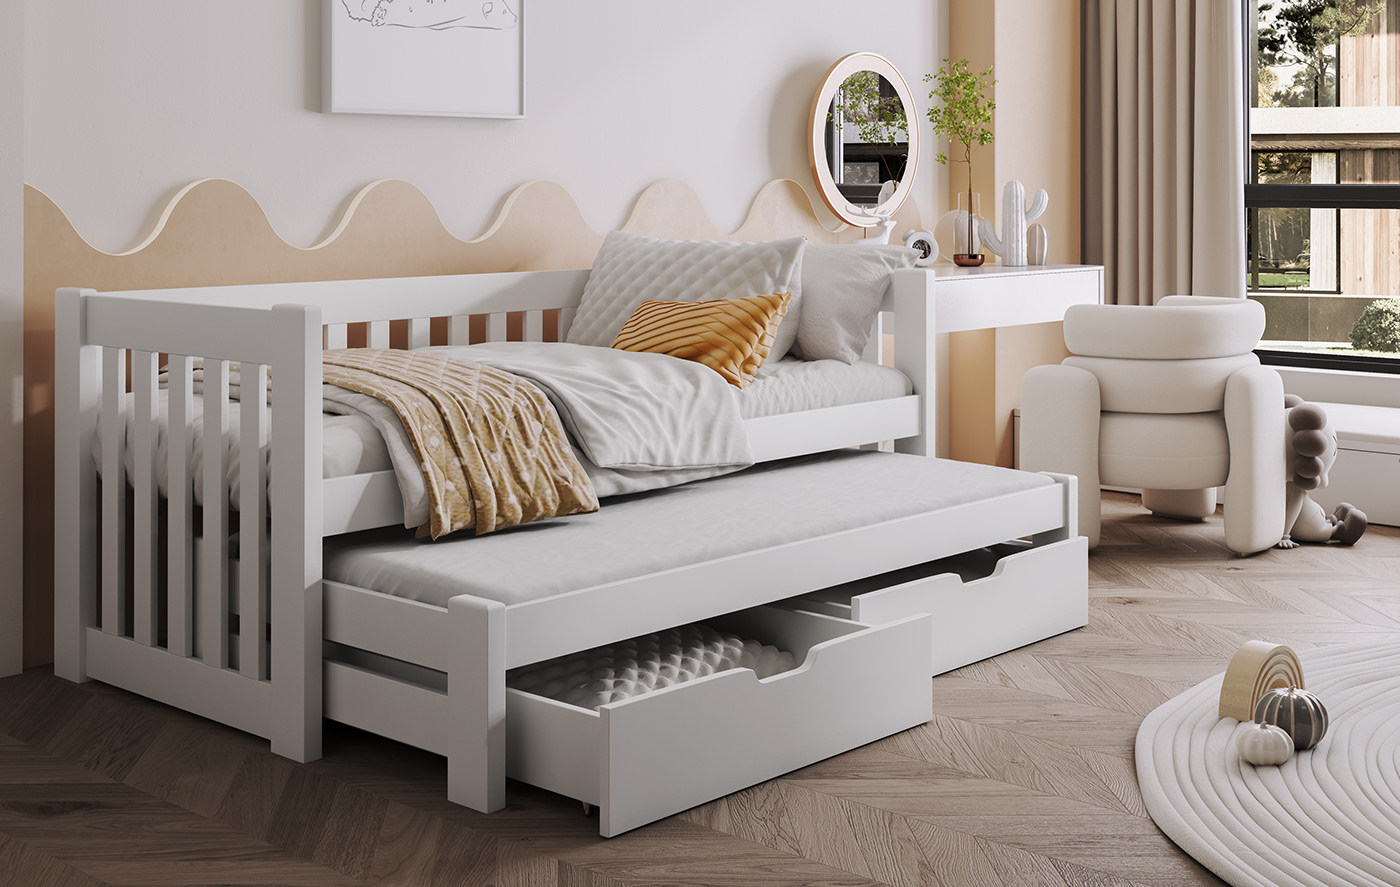 3D 3ds max architecture archviz bed interior design  modern Render visualization vray